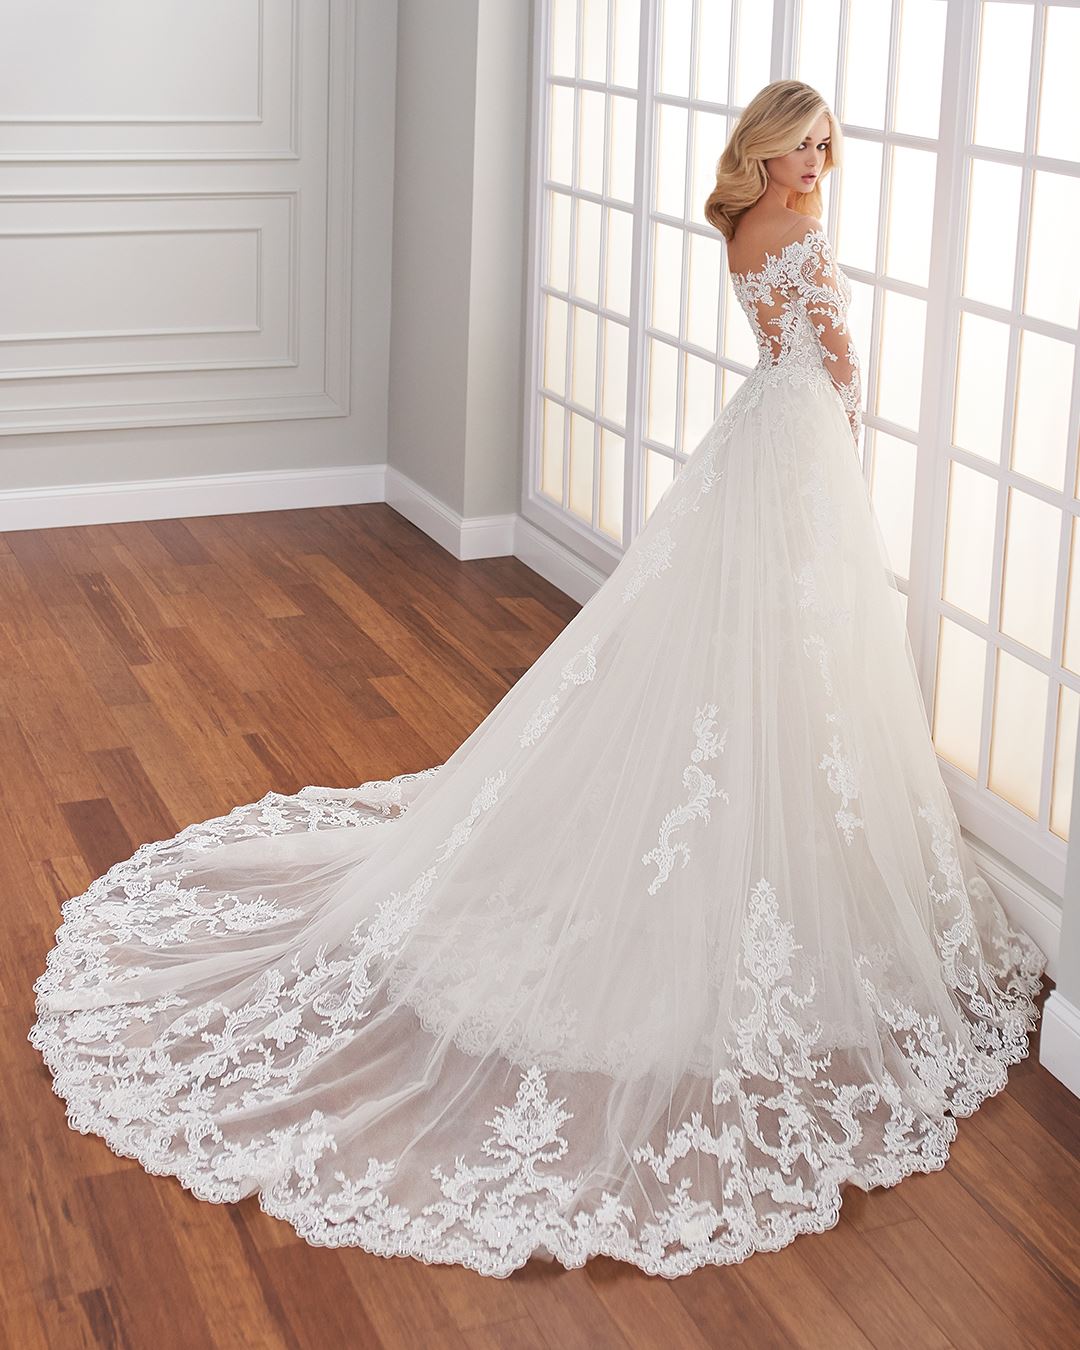 Bride wearing long sleeve lace wedding dress